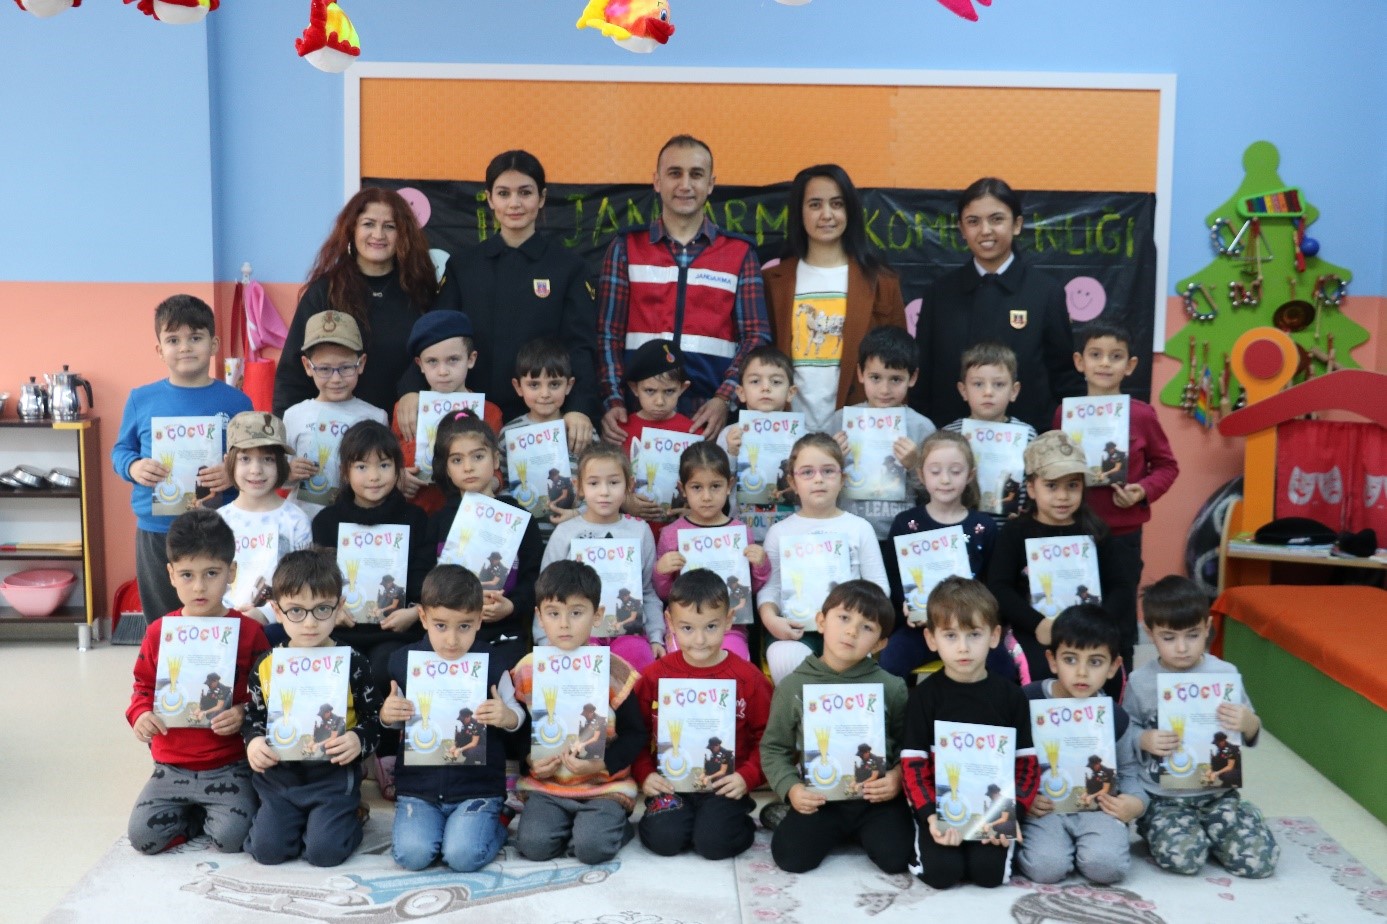 Durugöl Şehit Bayram Gümüş Anaokulu Meslek Gruplarını Tanıma Amaçlı Etkinlik düzenledi